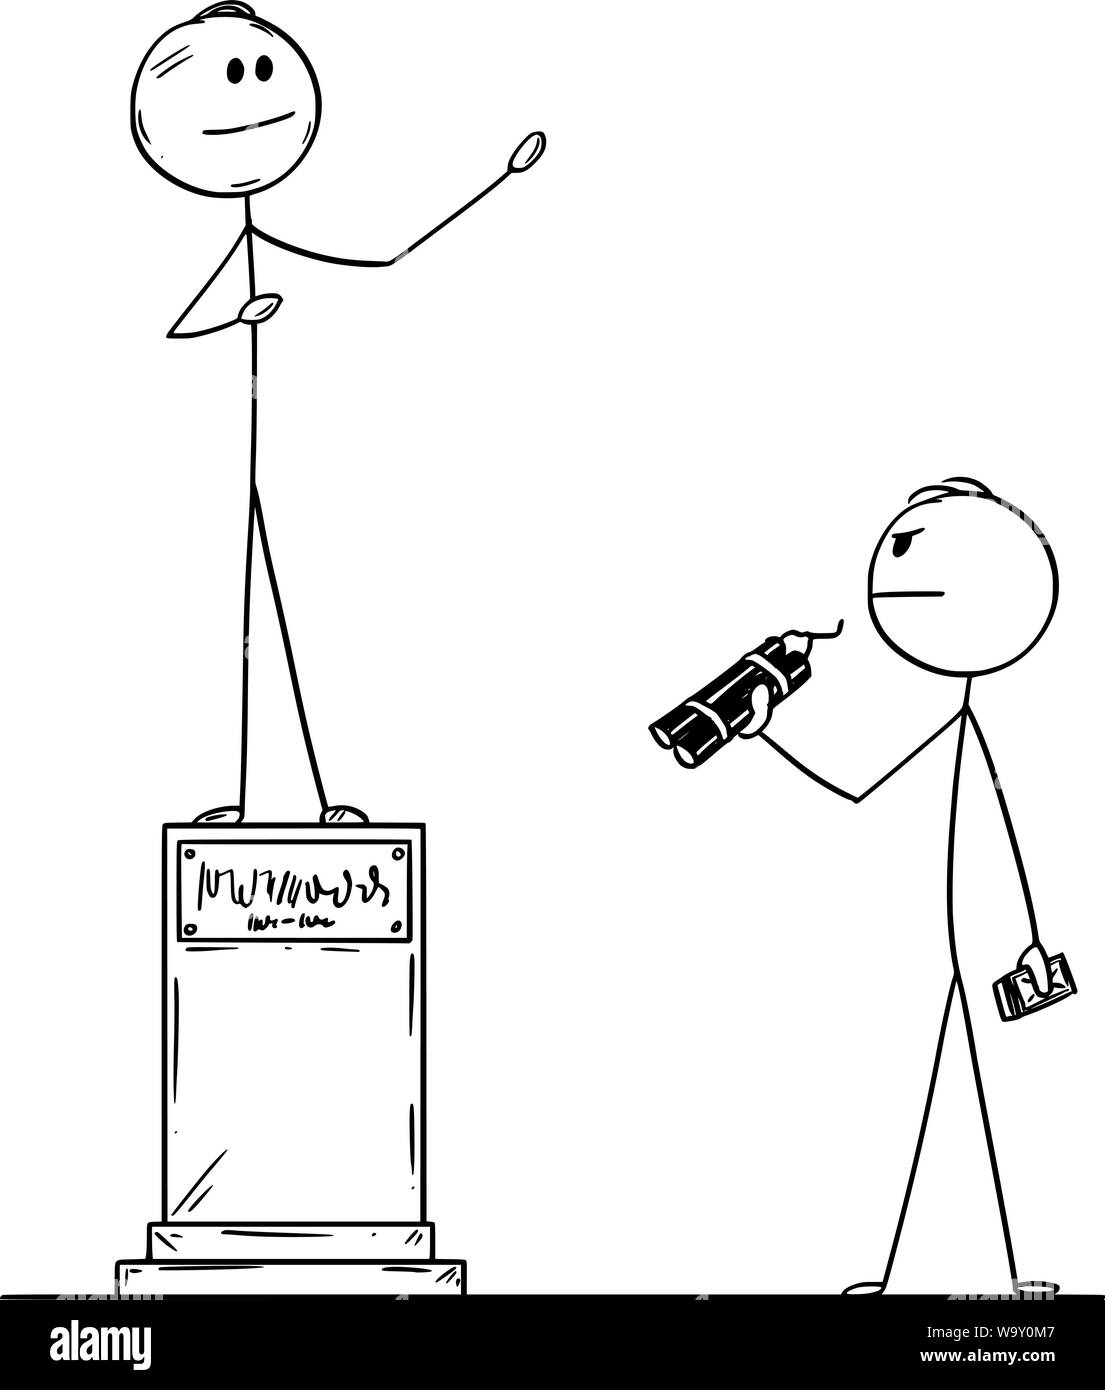 Cartoon vectores stick figura dibujo Ilustración conceptual del hombre con explosivo o bomba que va a destruir la estatua del político. Ilustración del Vector